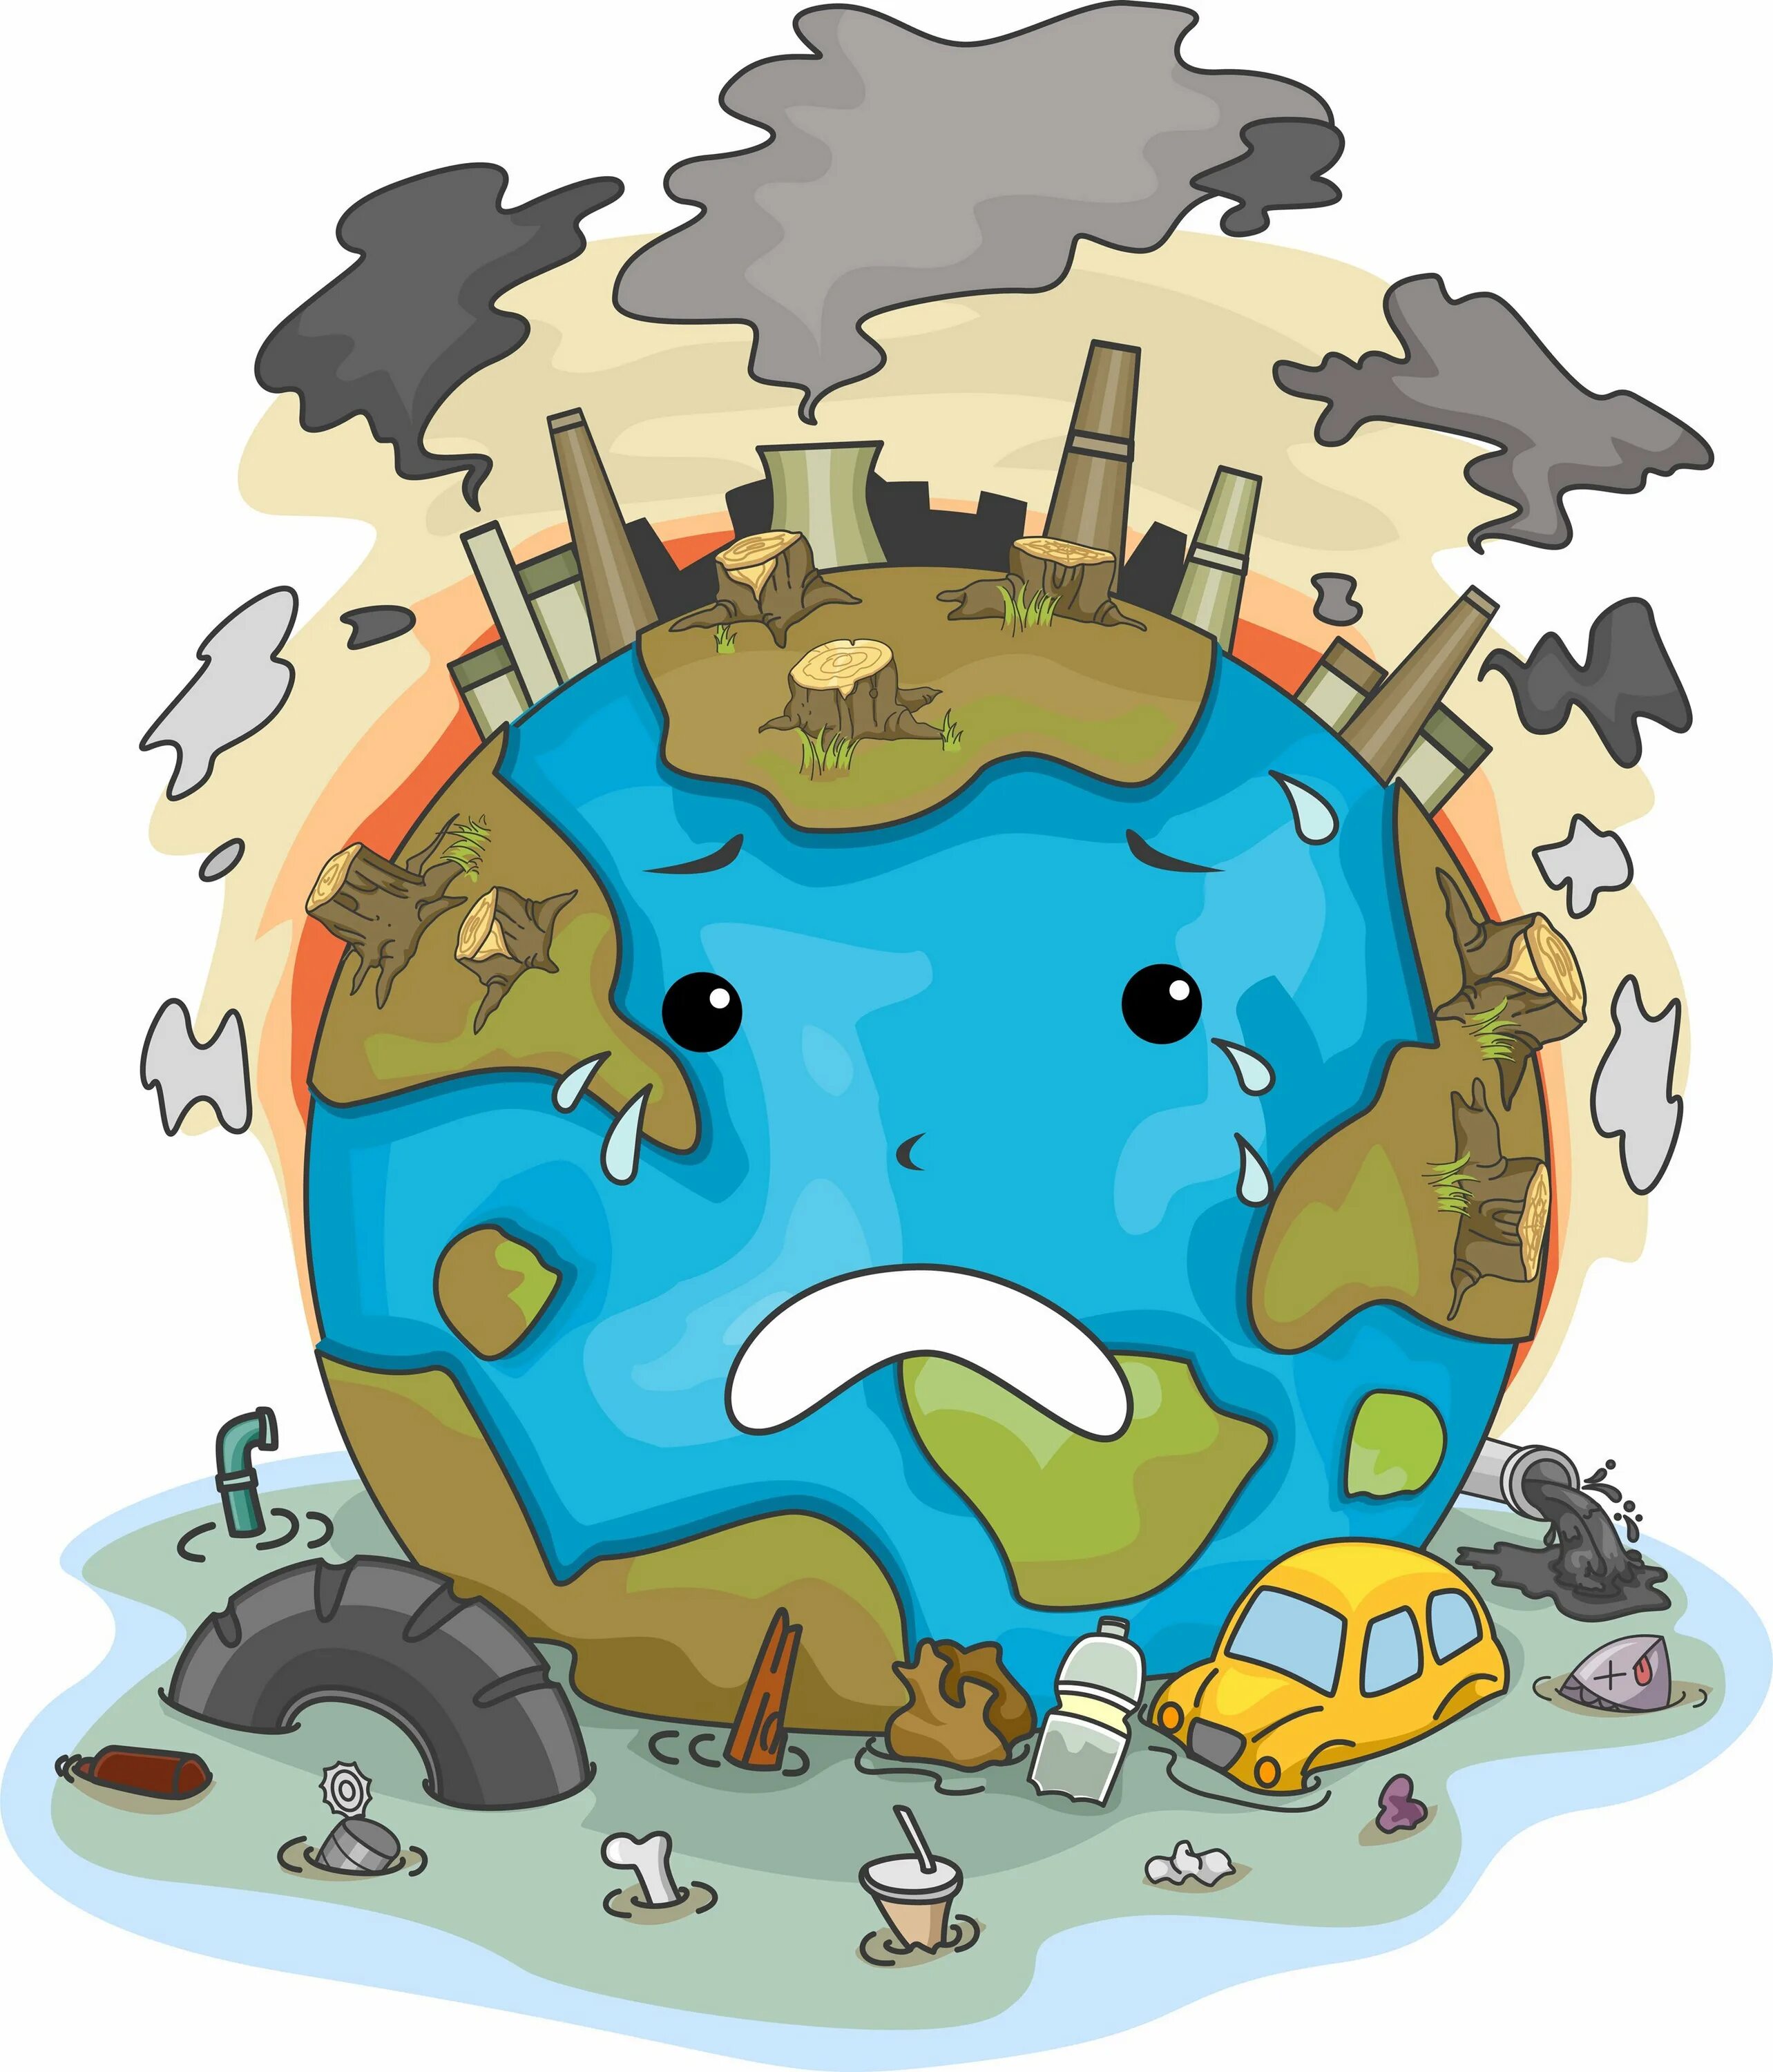 Pollution pictures. Загрязнение земли для детей. Загрязнение земли для дошкольников. Загрязнение окружающей среды для детей. Загрязнение планеты для детей.